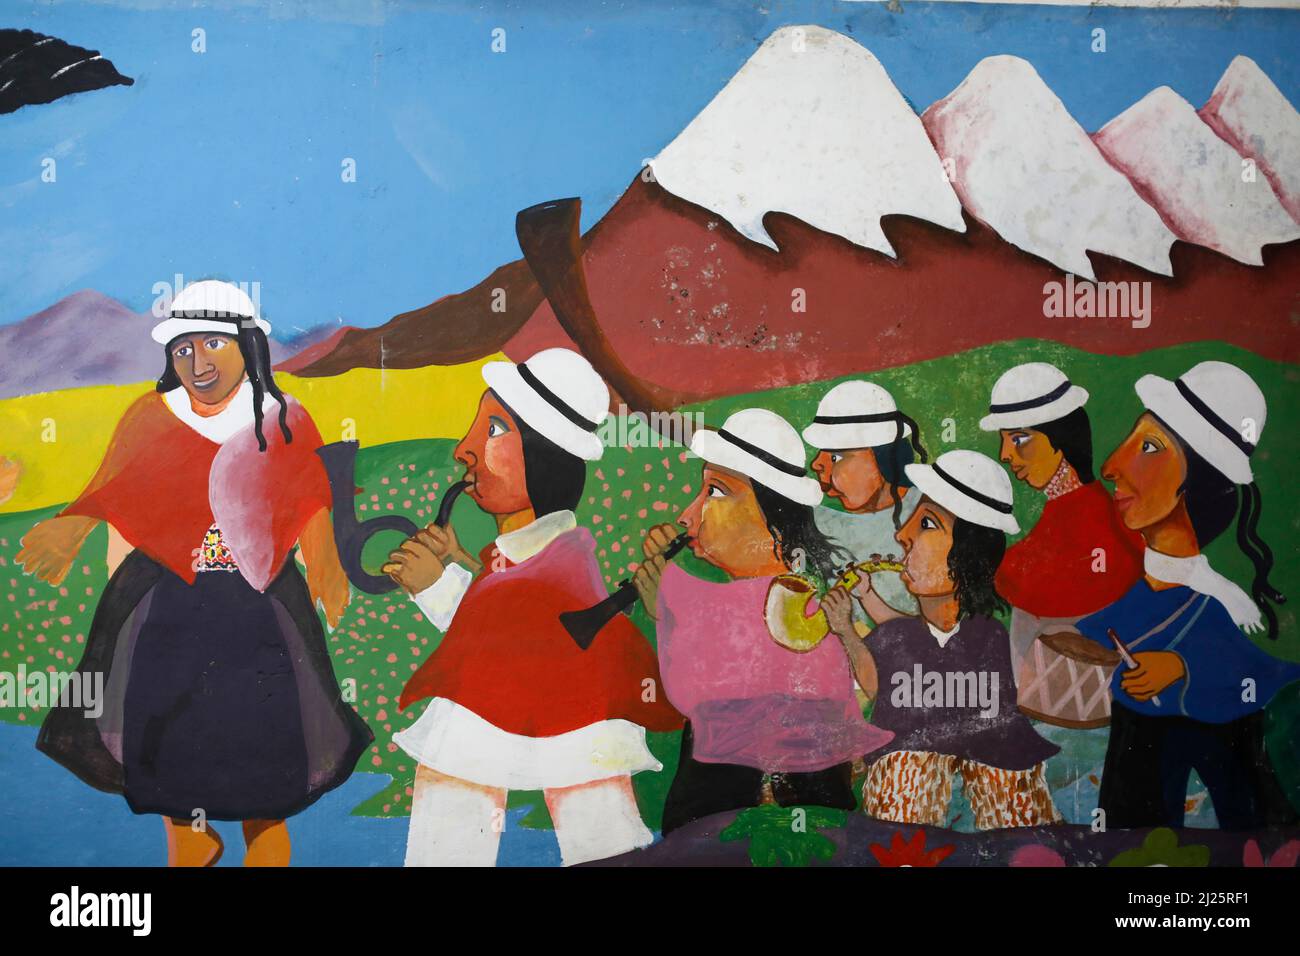 Détail d'une peinture murale collective réalisée par Pablo Sanaguano représentant la vie indigène traditionnelle à Chimborazo, Equateur Banque D'Images